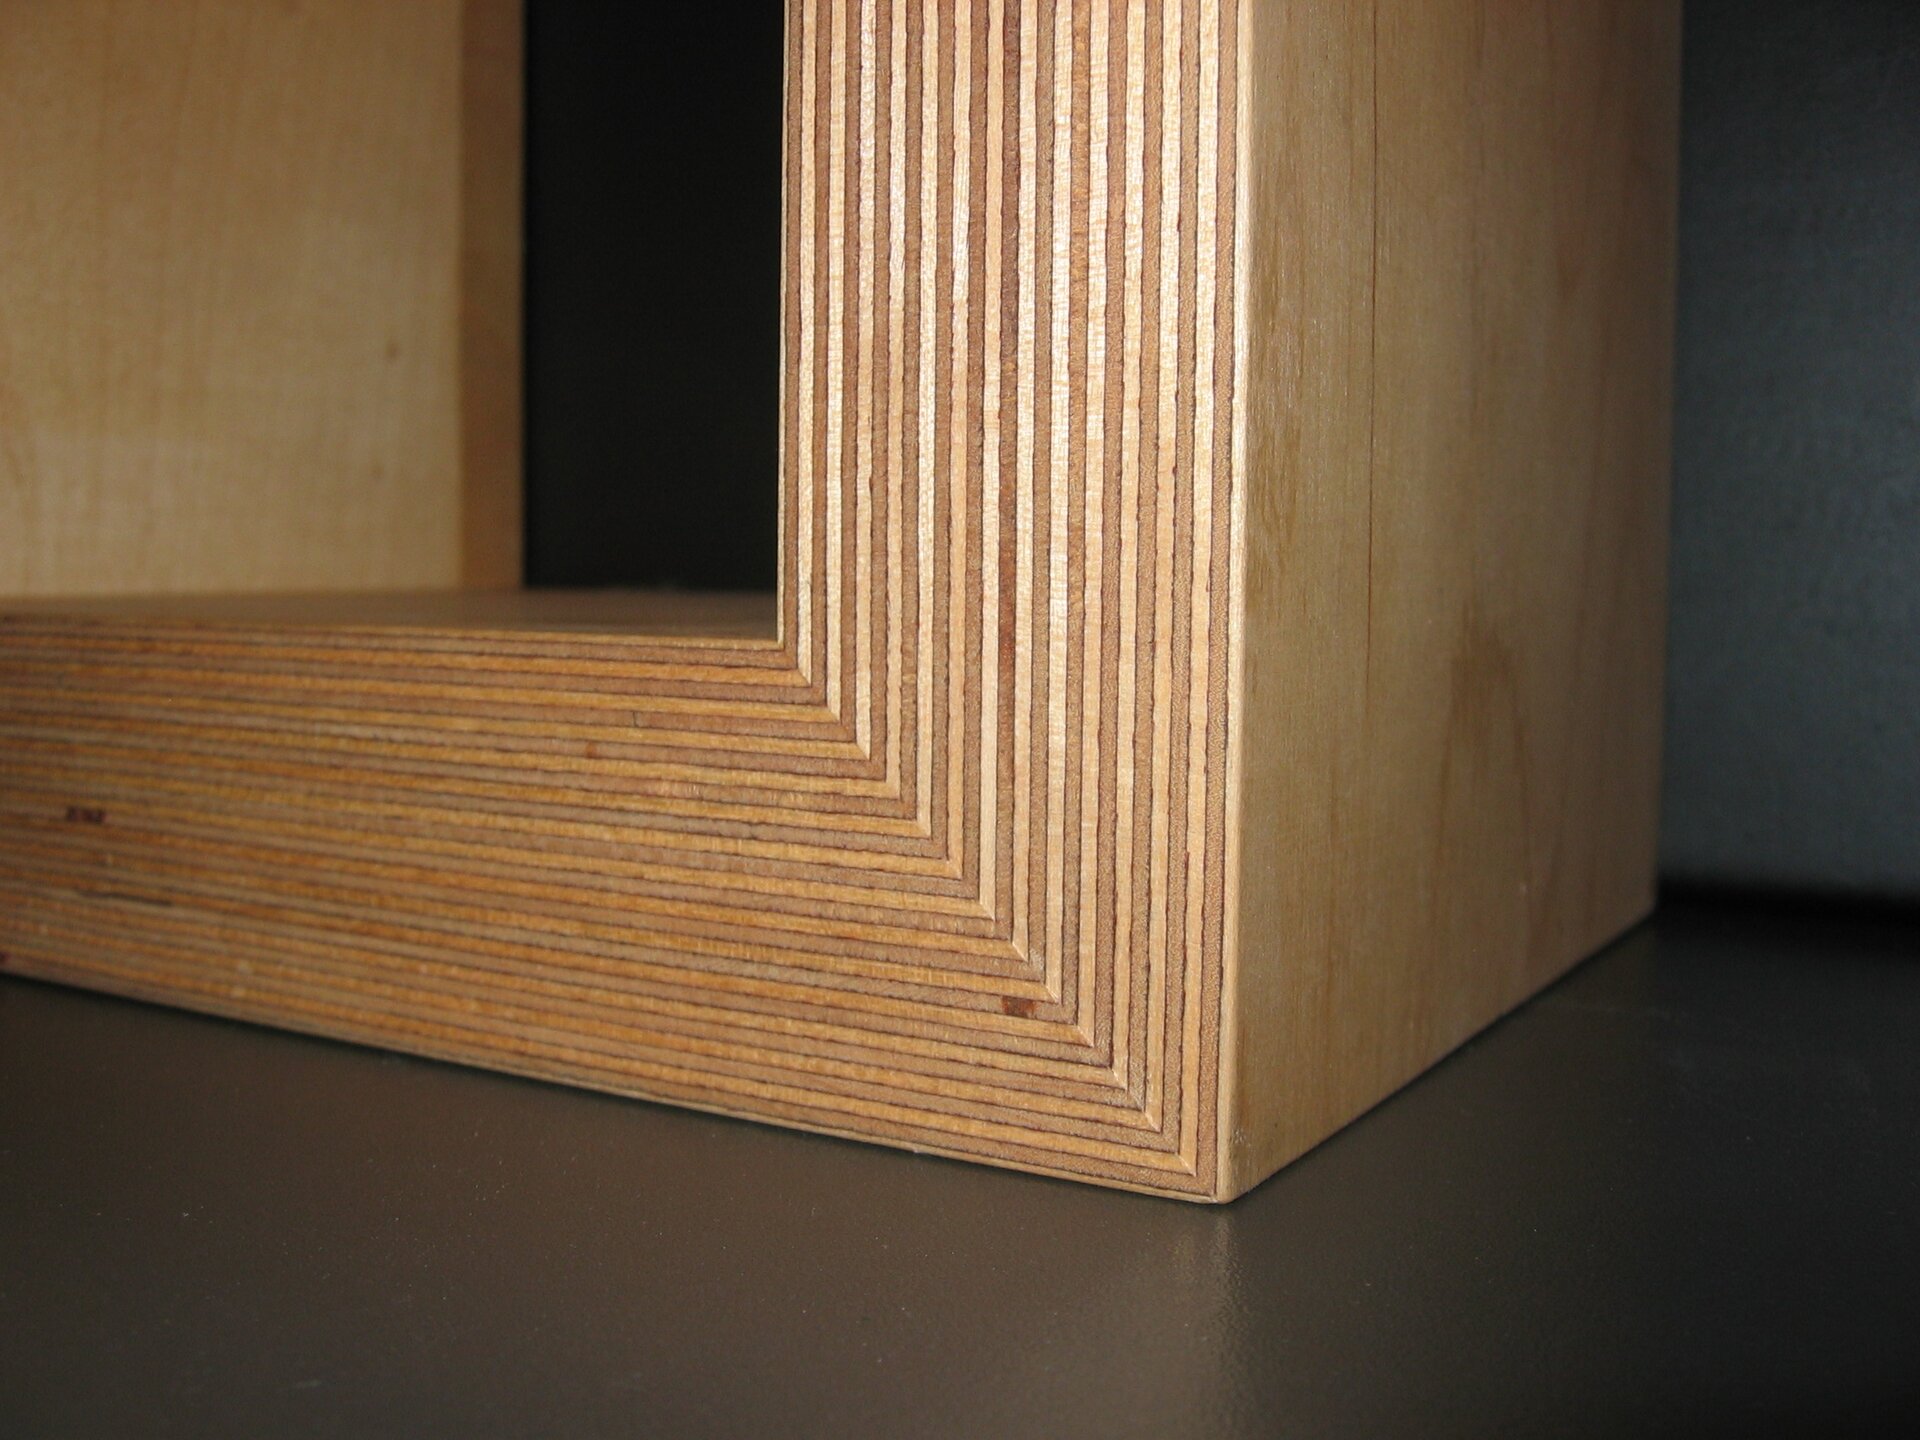 Zdjęcie przedstawia zbliżenie na element wykonany ze sklejki. Sklejka to materiał składający się ze sklejonych ze sobą cienkich warstw drewna. Pojedyncze warstwy sklejki są rozróżnialne. 